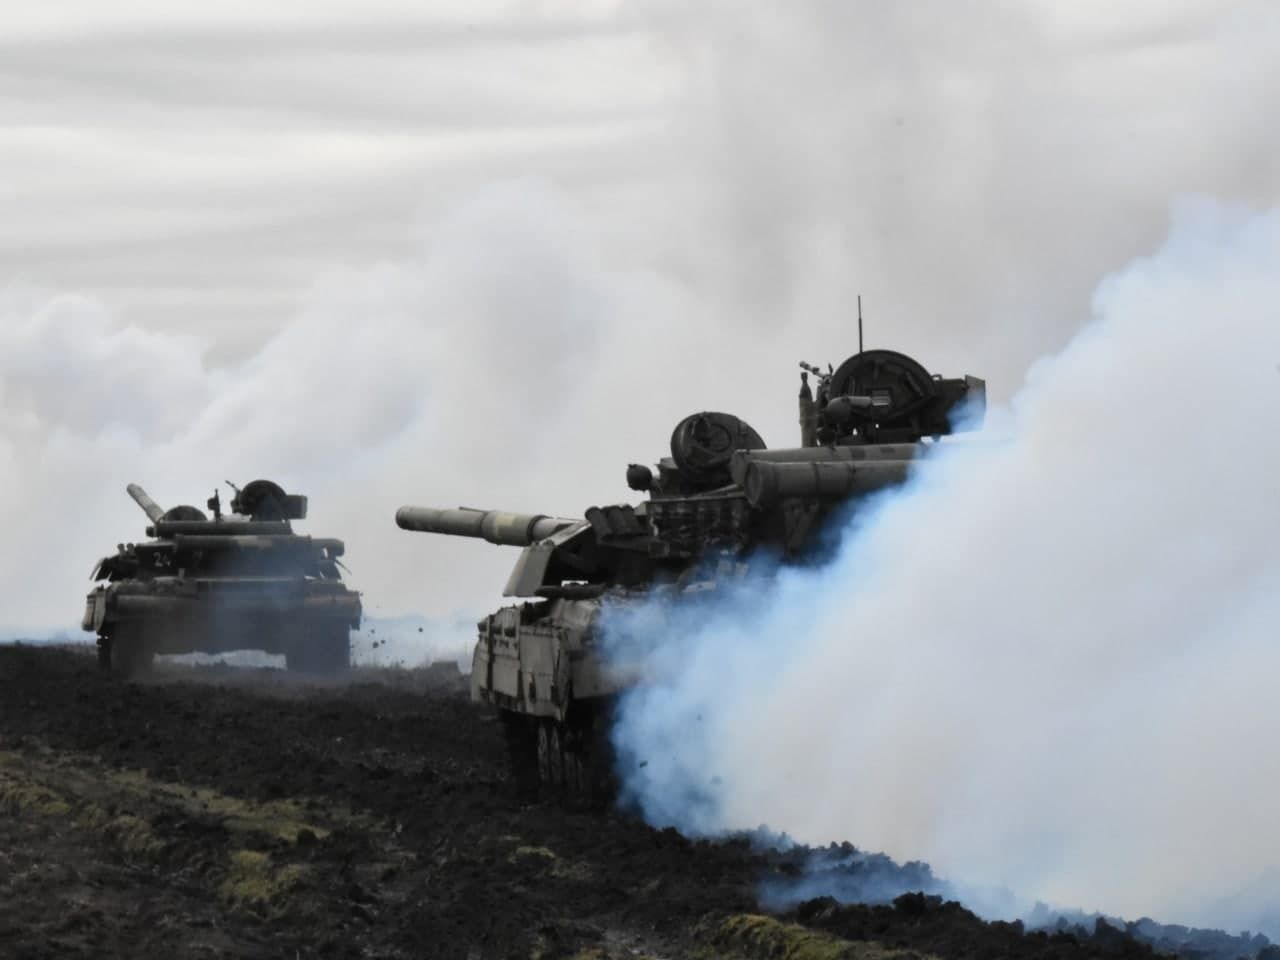 Тренировка танкистов ВСУ происходила в приближенных к боевым условиях